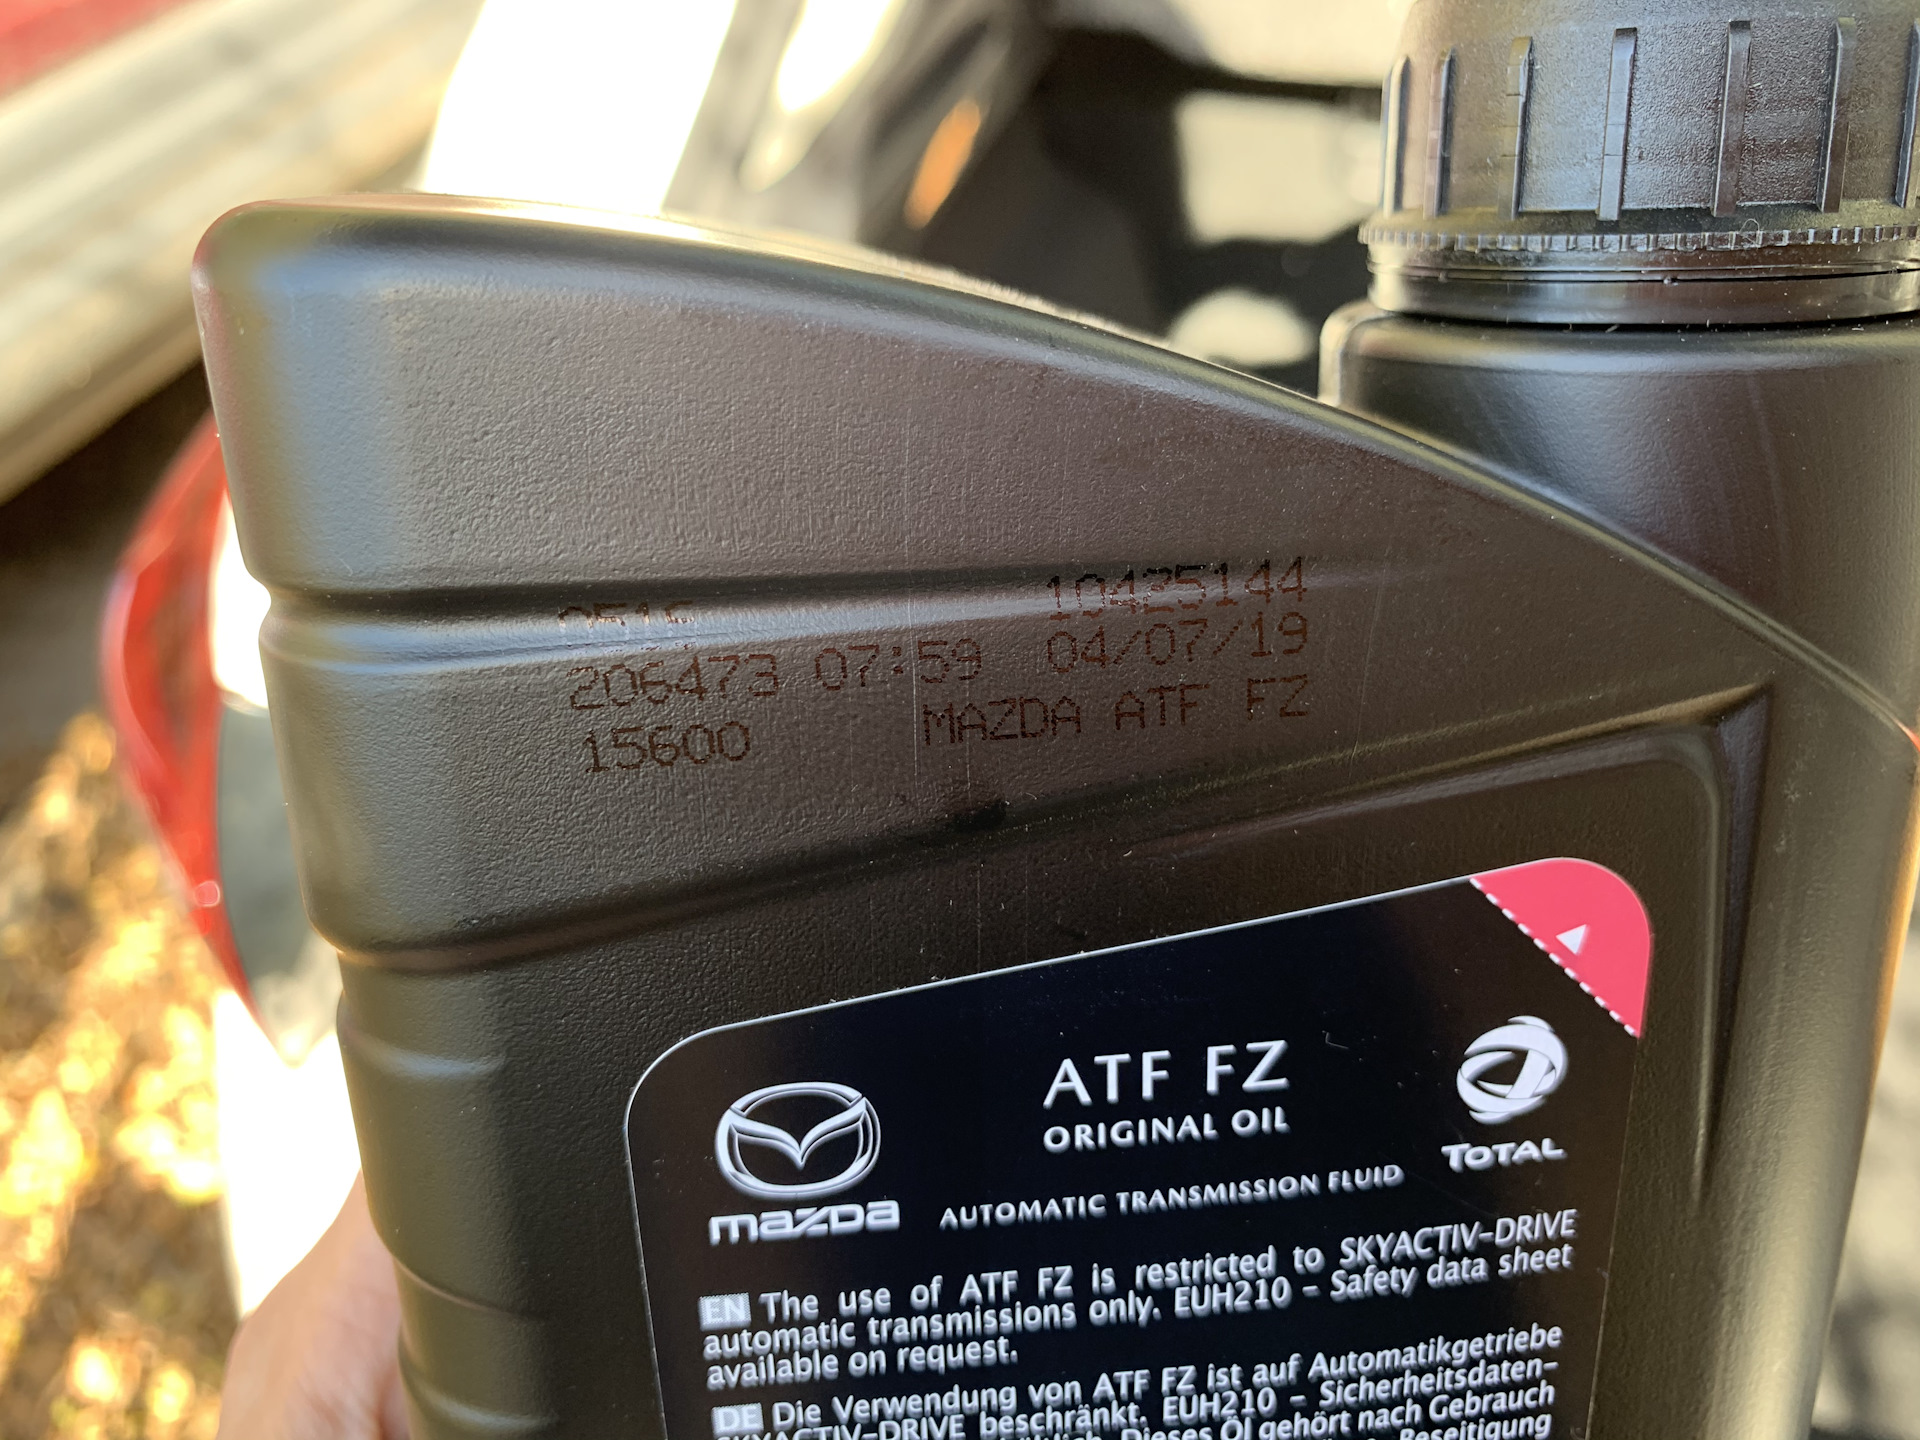 Допуск мазда сх5. Мазда ATF FZ. Mazda ATF FZ цвет. Mazda 6 2013 цвет масла АКПП ATF FZ. Масляные допуски Мазда CX-5.